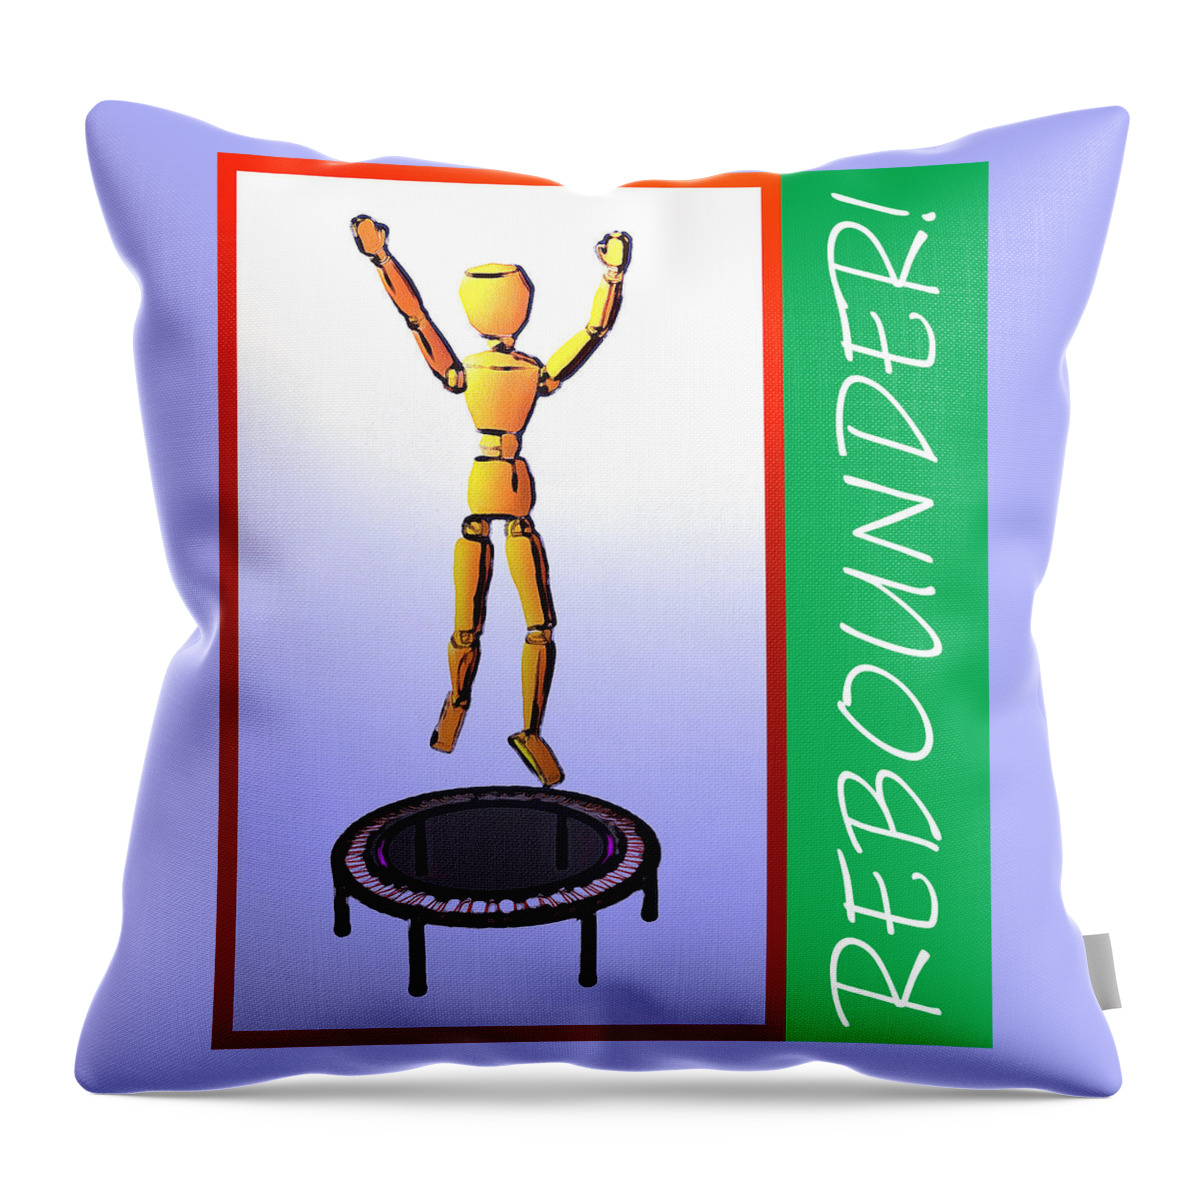 Rebounder Throw Pillow featuring the digital art Rebounder by Robert Bissett